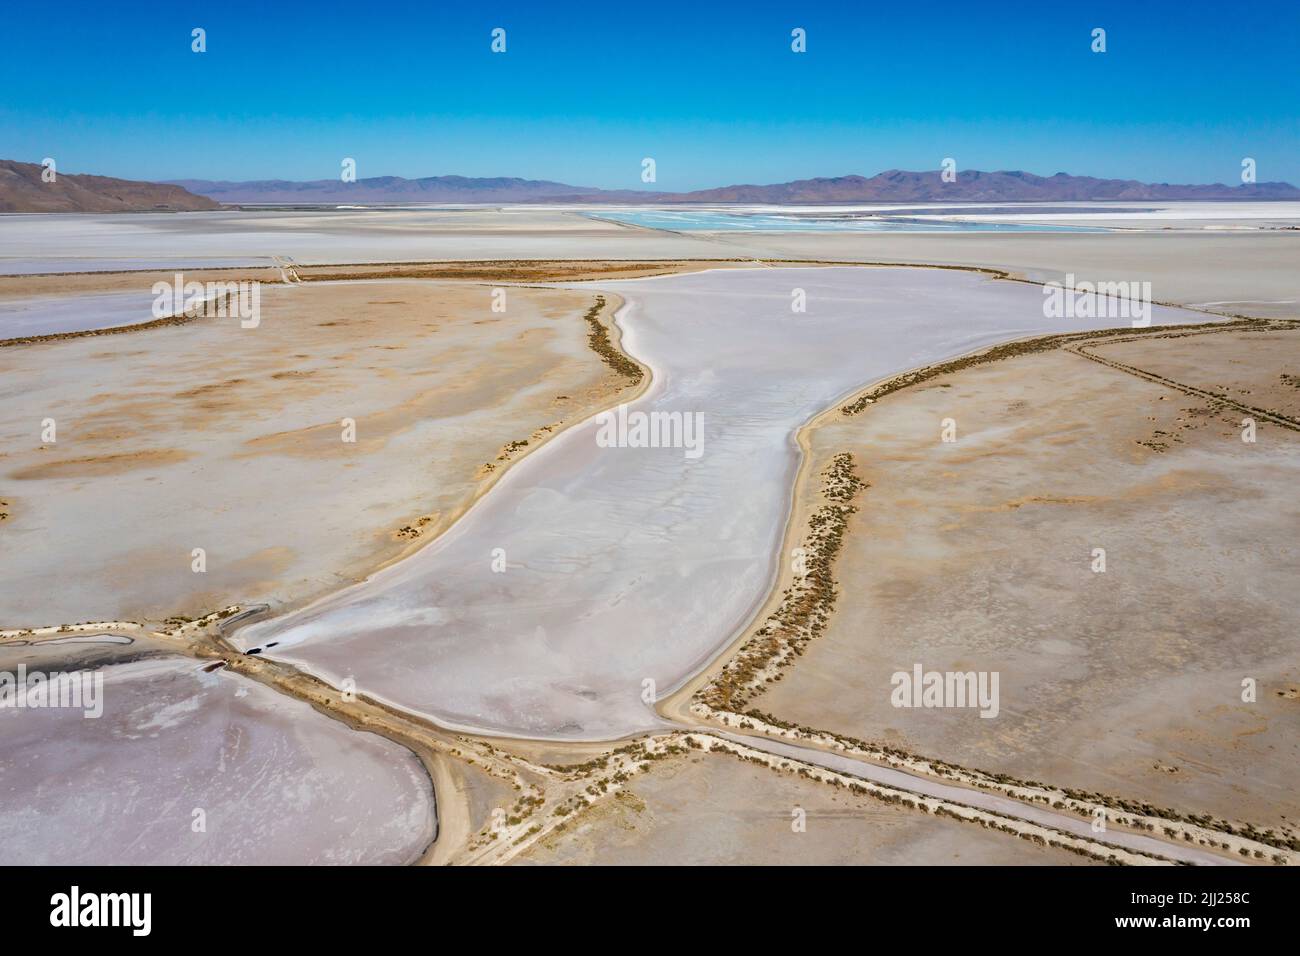 Grantsville, Utah - die Morton Salt-Anlage, in der Salz durch Aufschlagen von Sole in flachen Verdampfungsteichen am Rande des Great Salt Lake produziert wird. Stockfoto